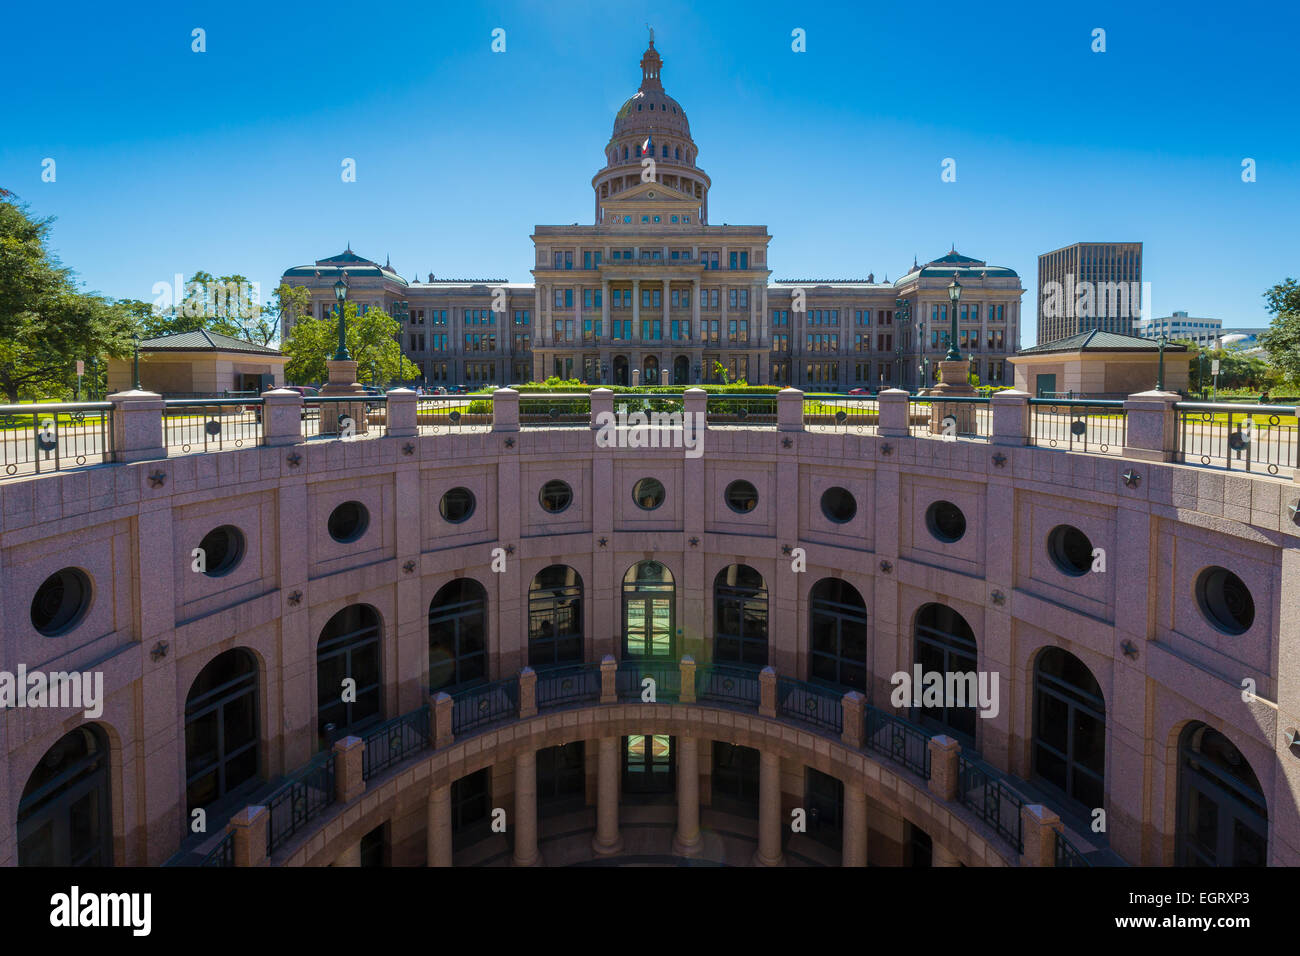 Le Texas State Capitol, situé dans le centre-ville d'Austin, est le quatrième bâtiment pour abriter le gouvernement de l'état du Texas. Banque D'Images